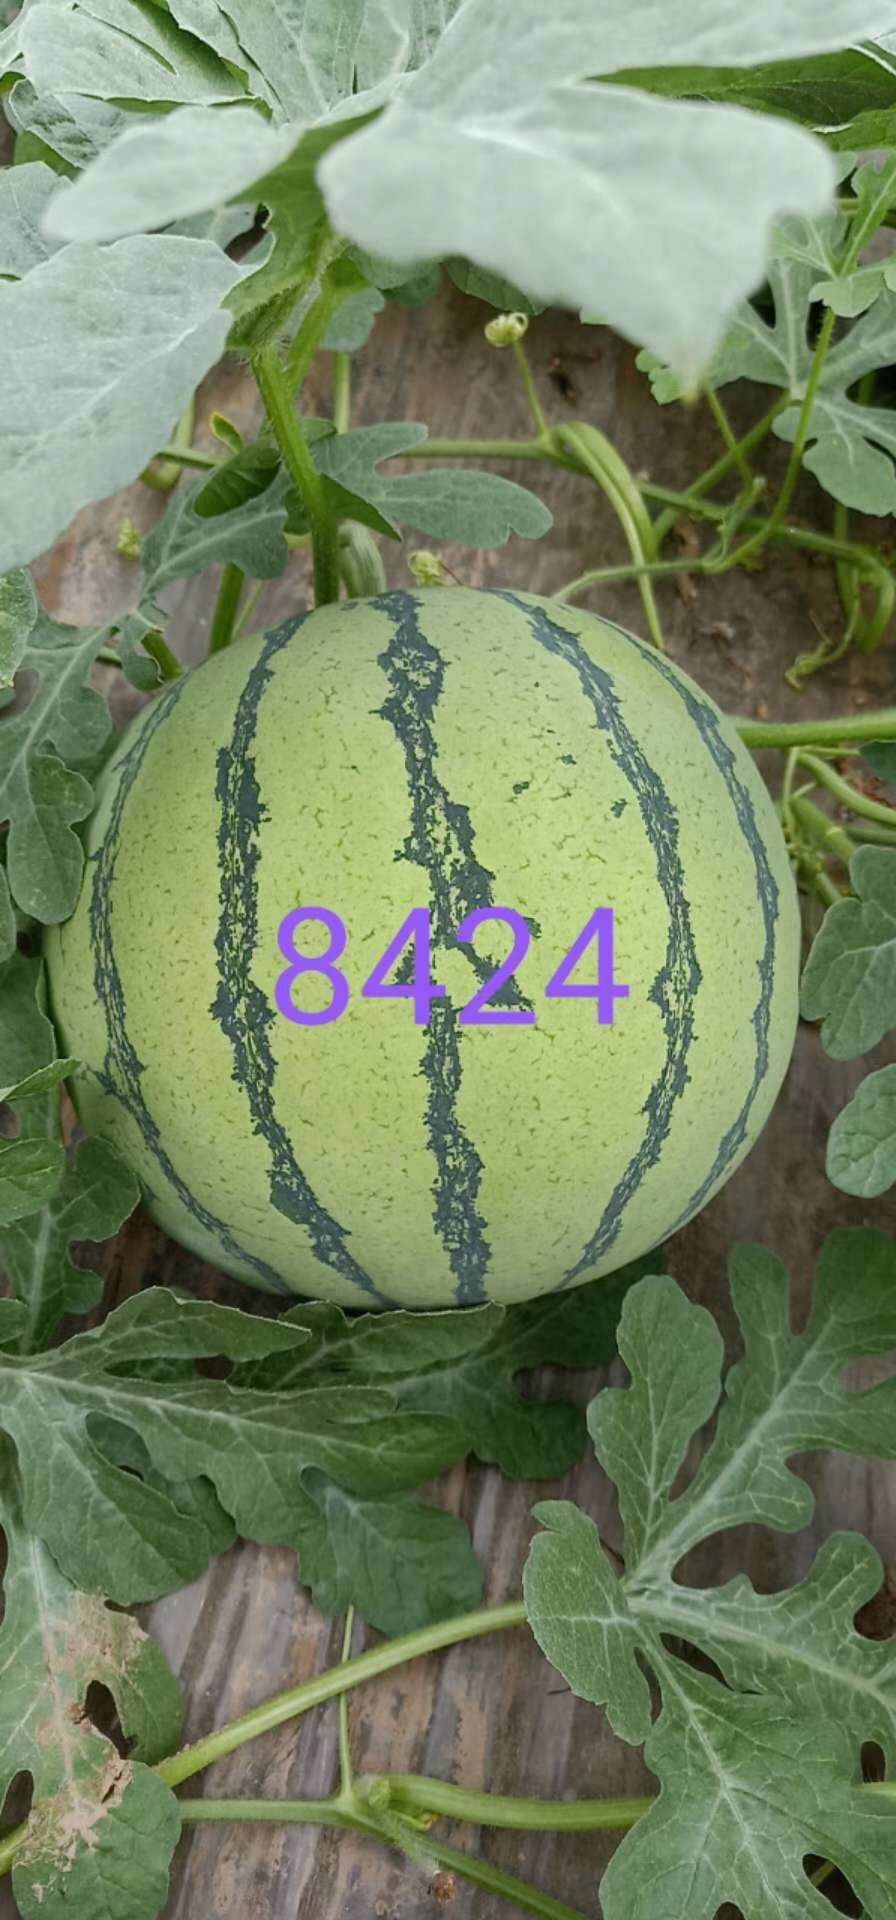 安徽西瓜大市场 8424西瓜种植基地